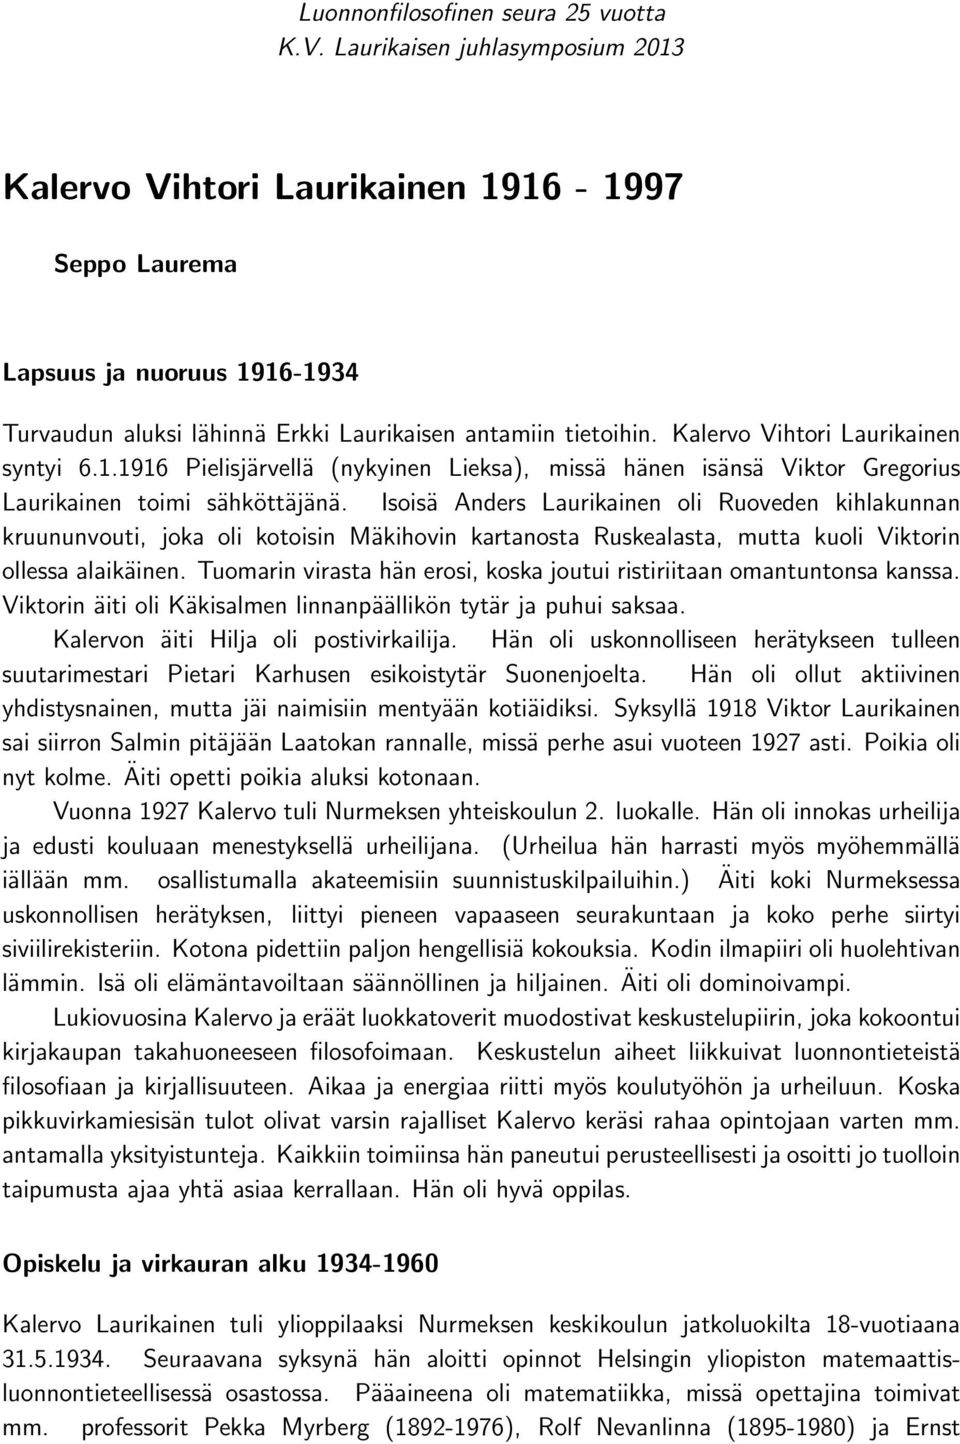 Kalervo Vihtori Laurikainen syntyi 6.1.1916 Pielisjärvellä (nykyinen Lieksa), missä hänen isänsä Viktor Gregorius Laurikainen toimi sähköttäjänä.